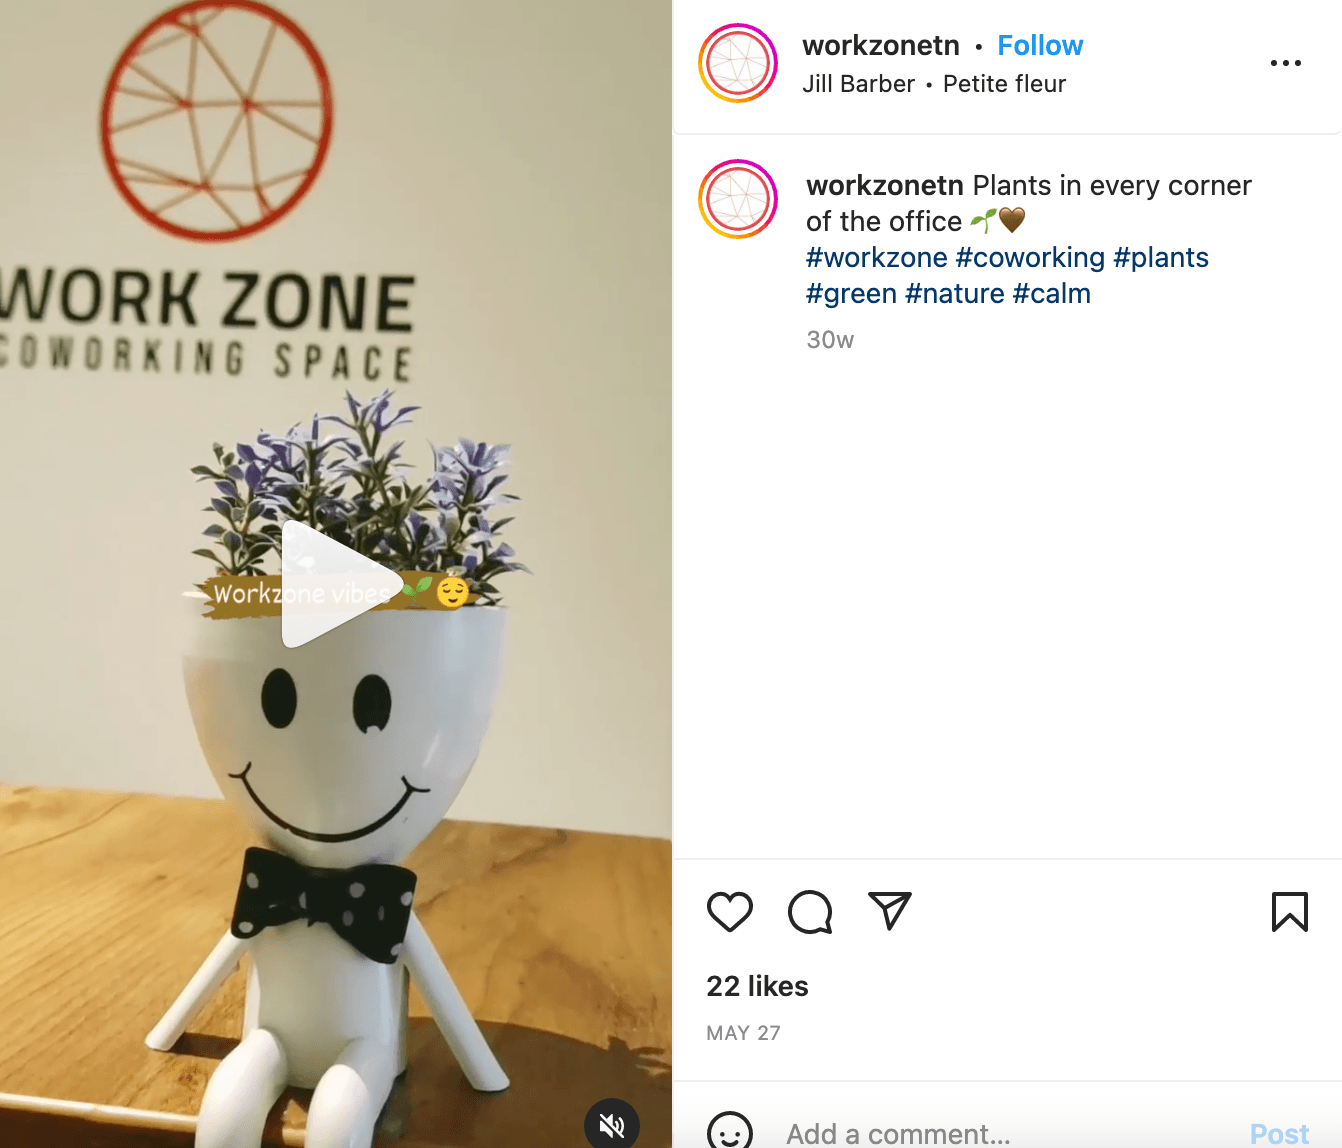 Instagram reel by WorkzoneTN coworking space